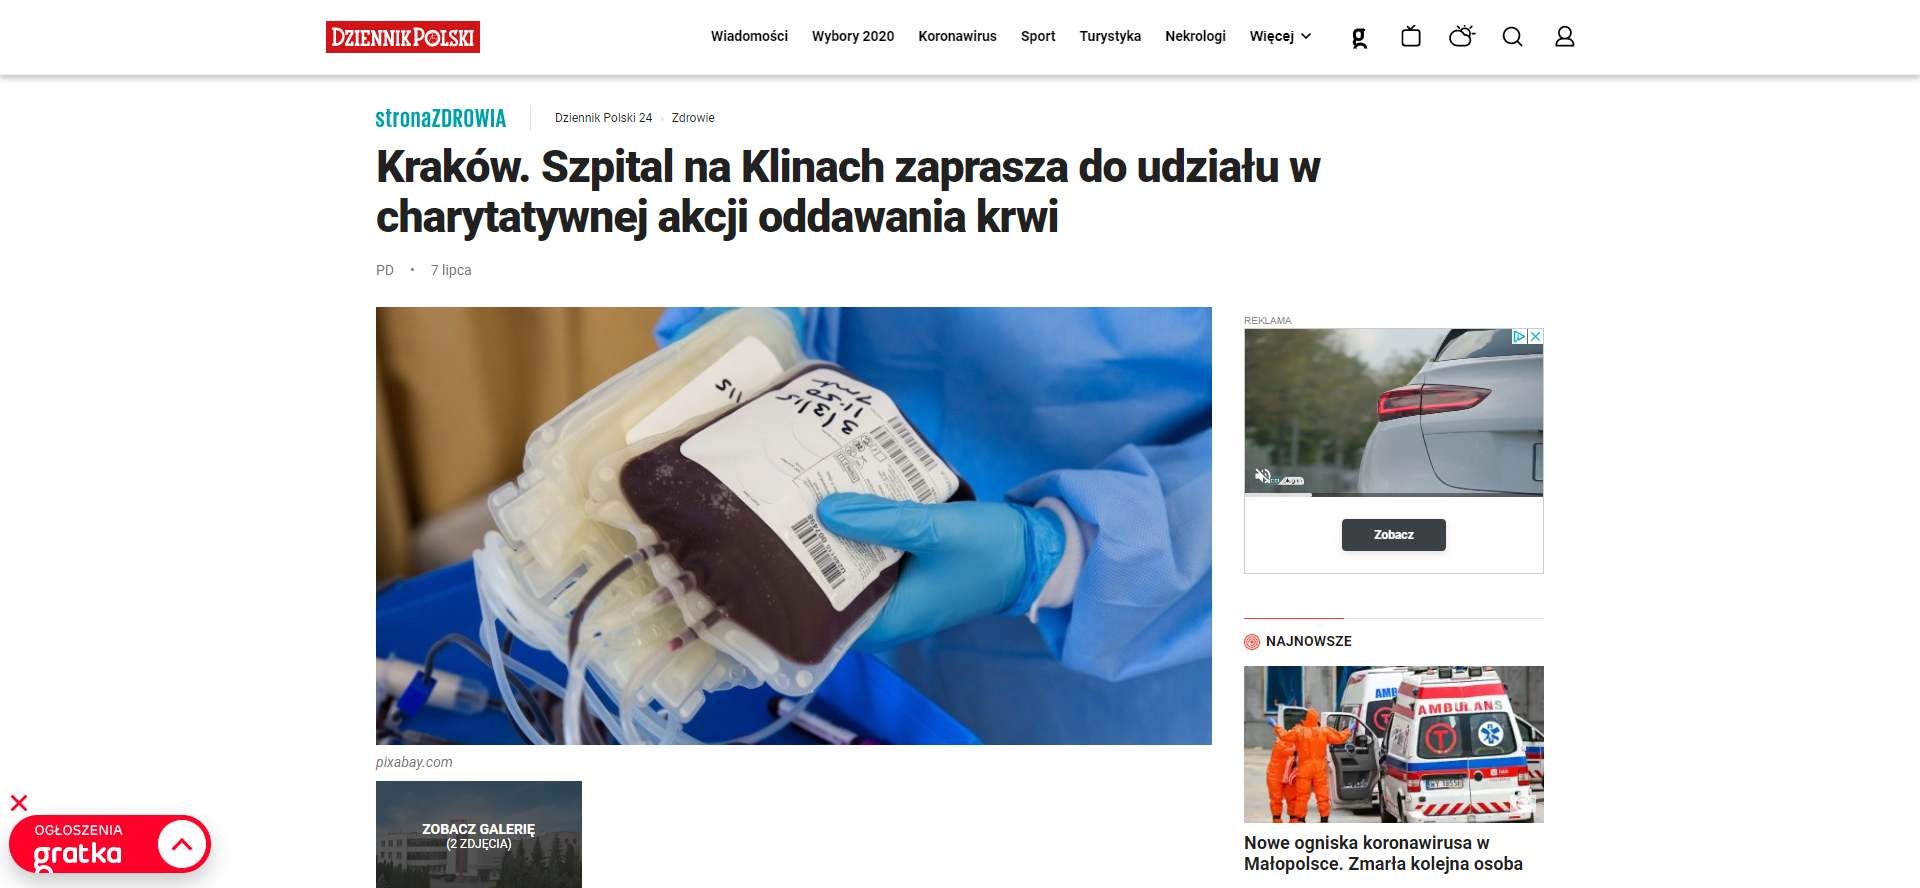 krakow szpital na klinach zaprasza do udzialu w charytatywnej akcji oddawania krwi